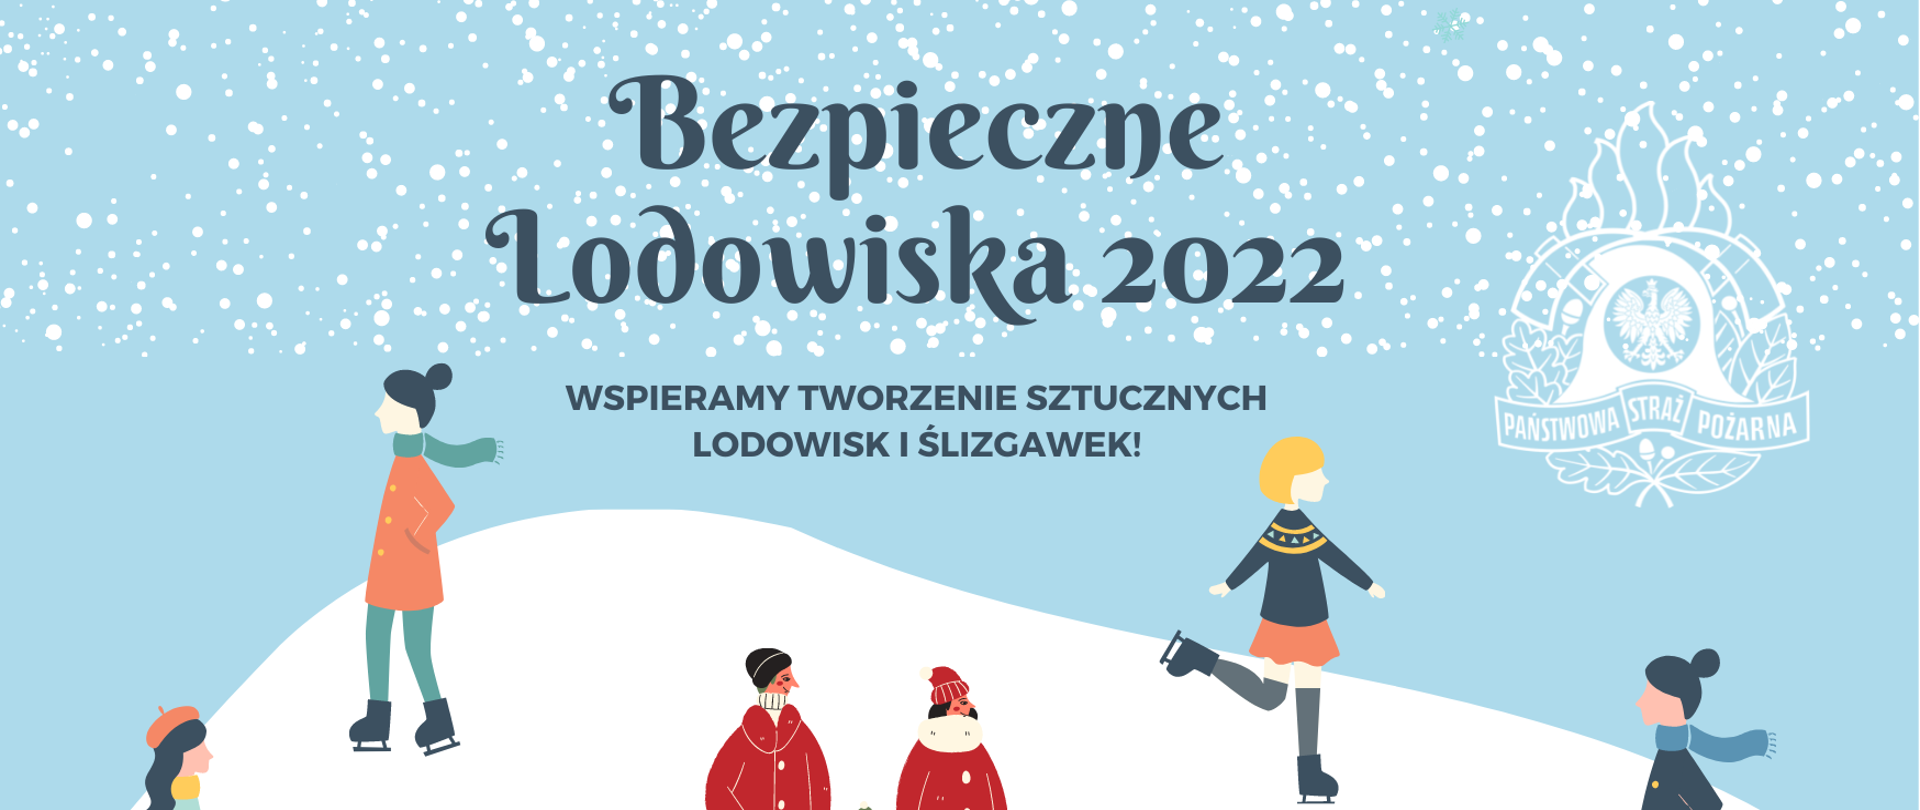 Plakat z niebieskim napisem Bezpieczne Lodowiska 2022, wspieramy tworzenie sztucznych lodowisk i ślizgawek! Poniżej tekstu rysunek lodowiska i 7 ludzików jeżdżących na nim, na łyżwach.